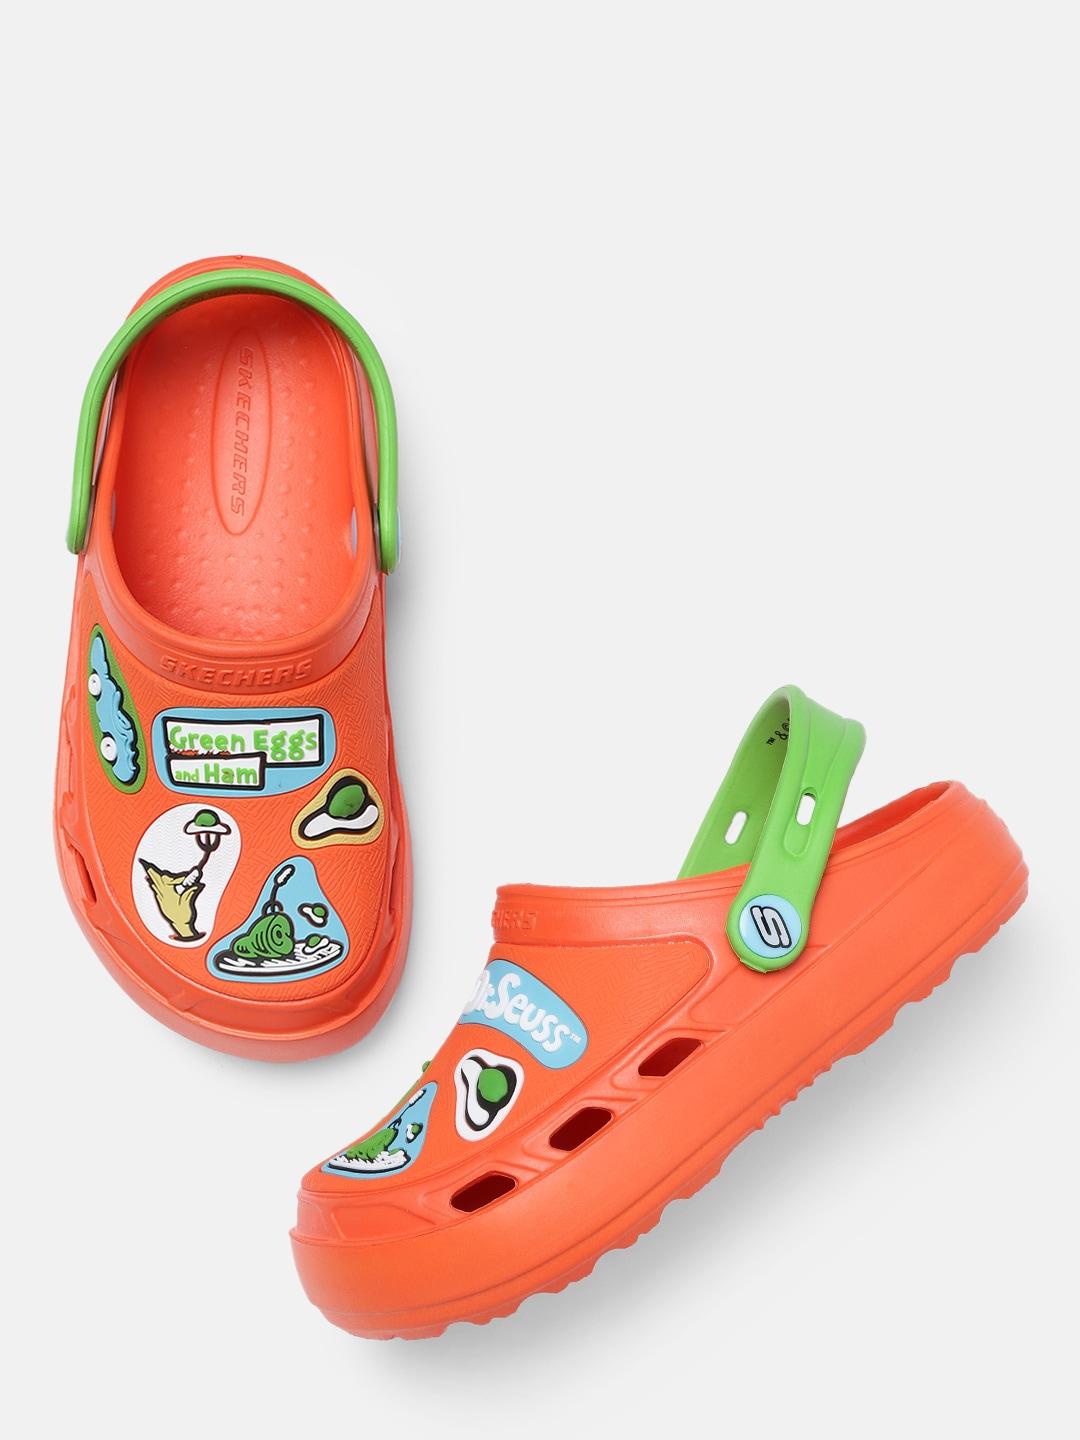 Skechers Boys Orange SWIFTERS Clogs Sandals